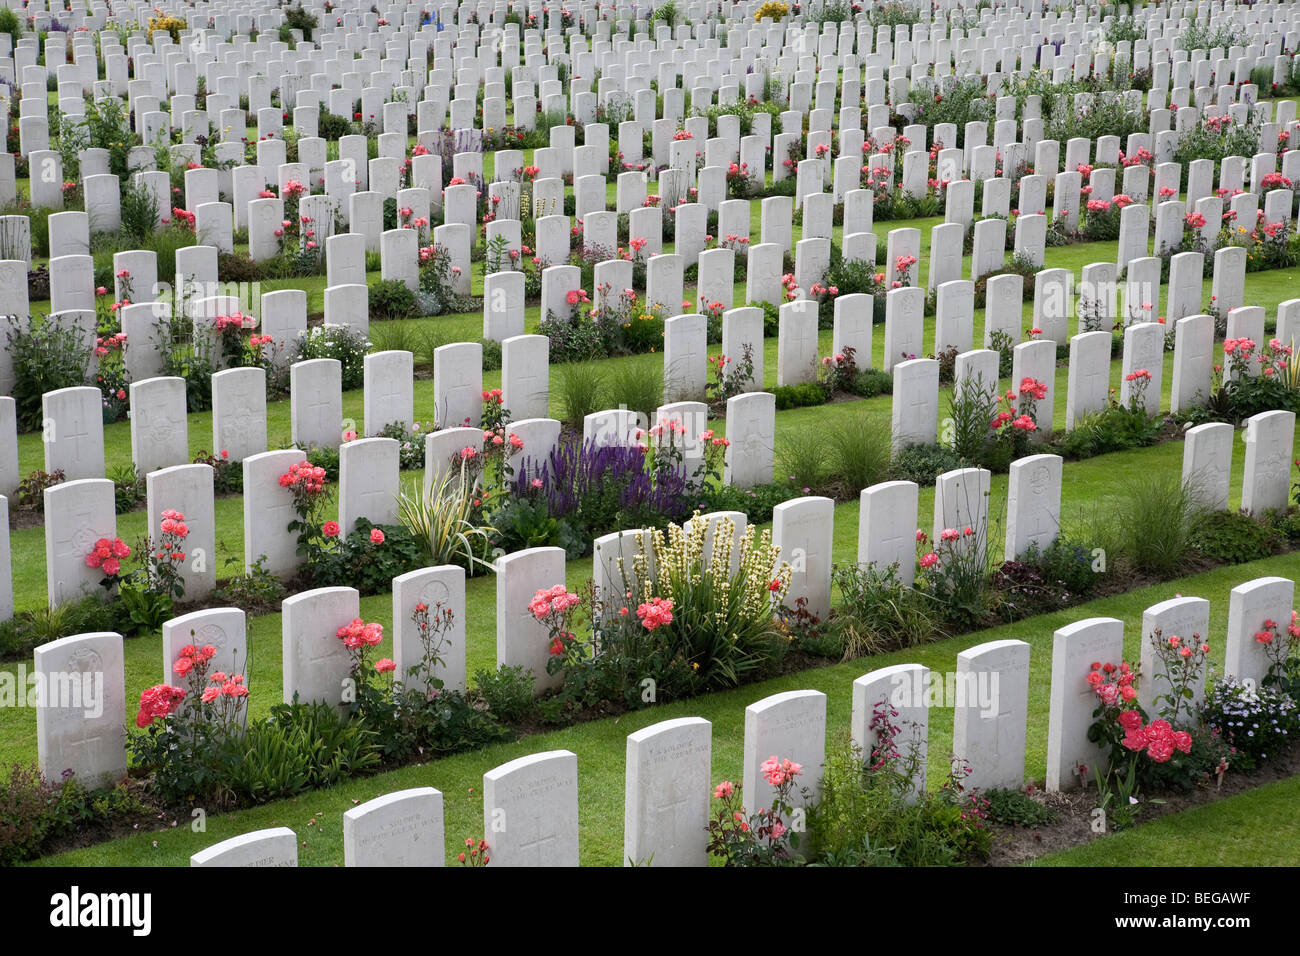 Vue sur le cimetière militaire de Tyne Cot. Cimetière britannique de la Première Guerre mondiale avec 11 856 pierres tombales blanches. Banque D'Images